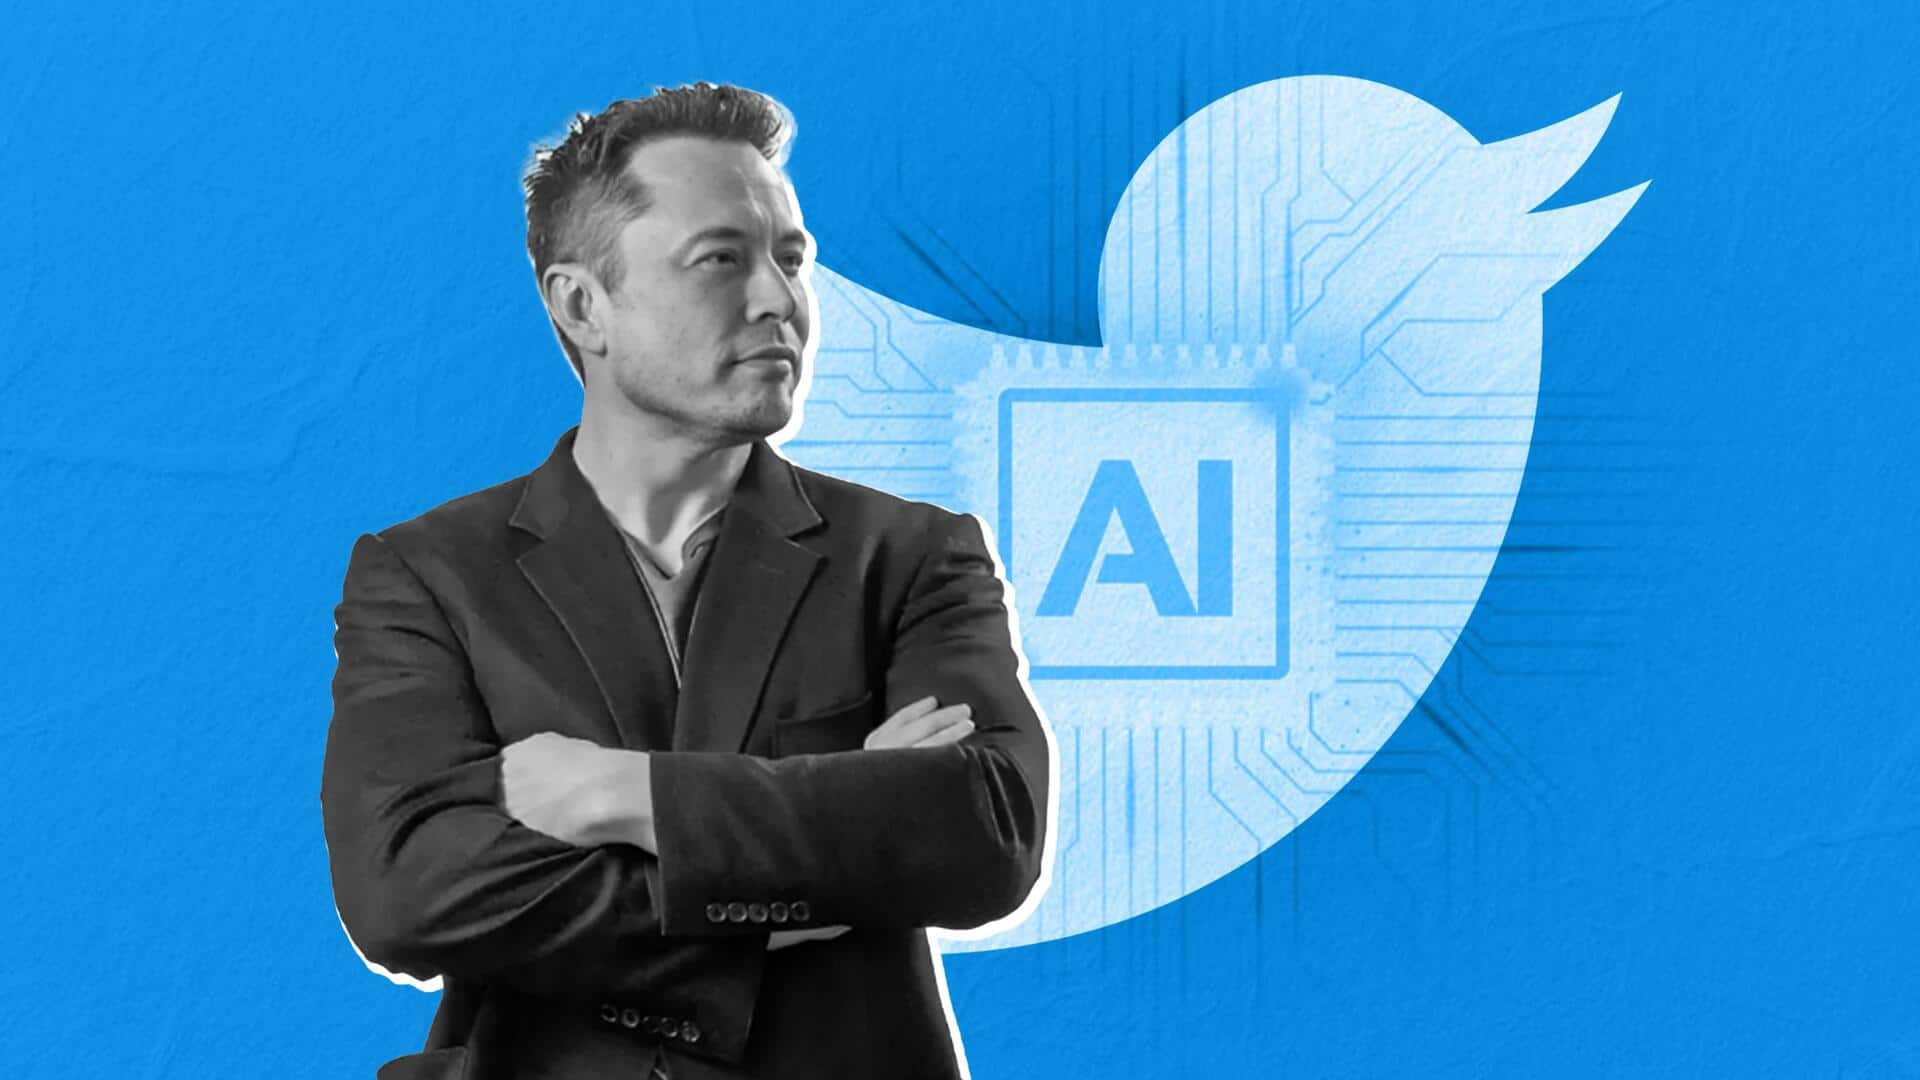 ट्विटर AI के जरिए जनमत प्रभावित करने वालों का पता लगाएगी- एलन मस्क